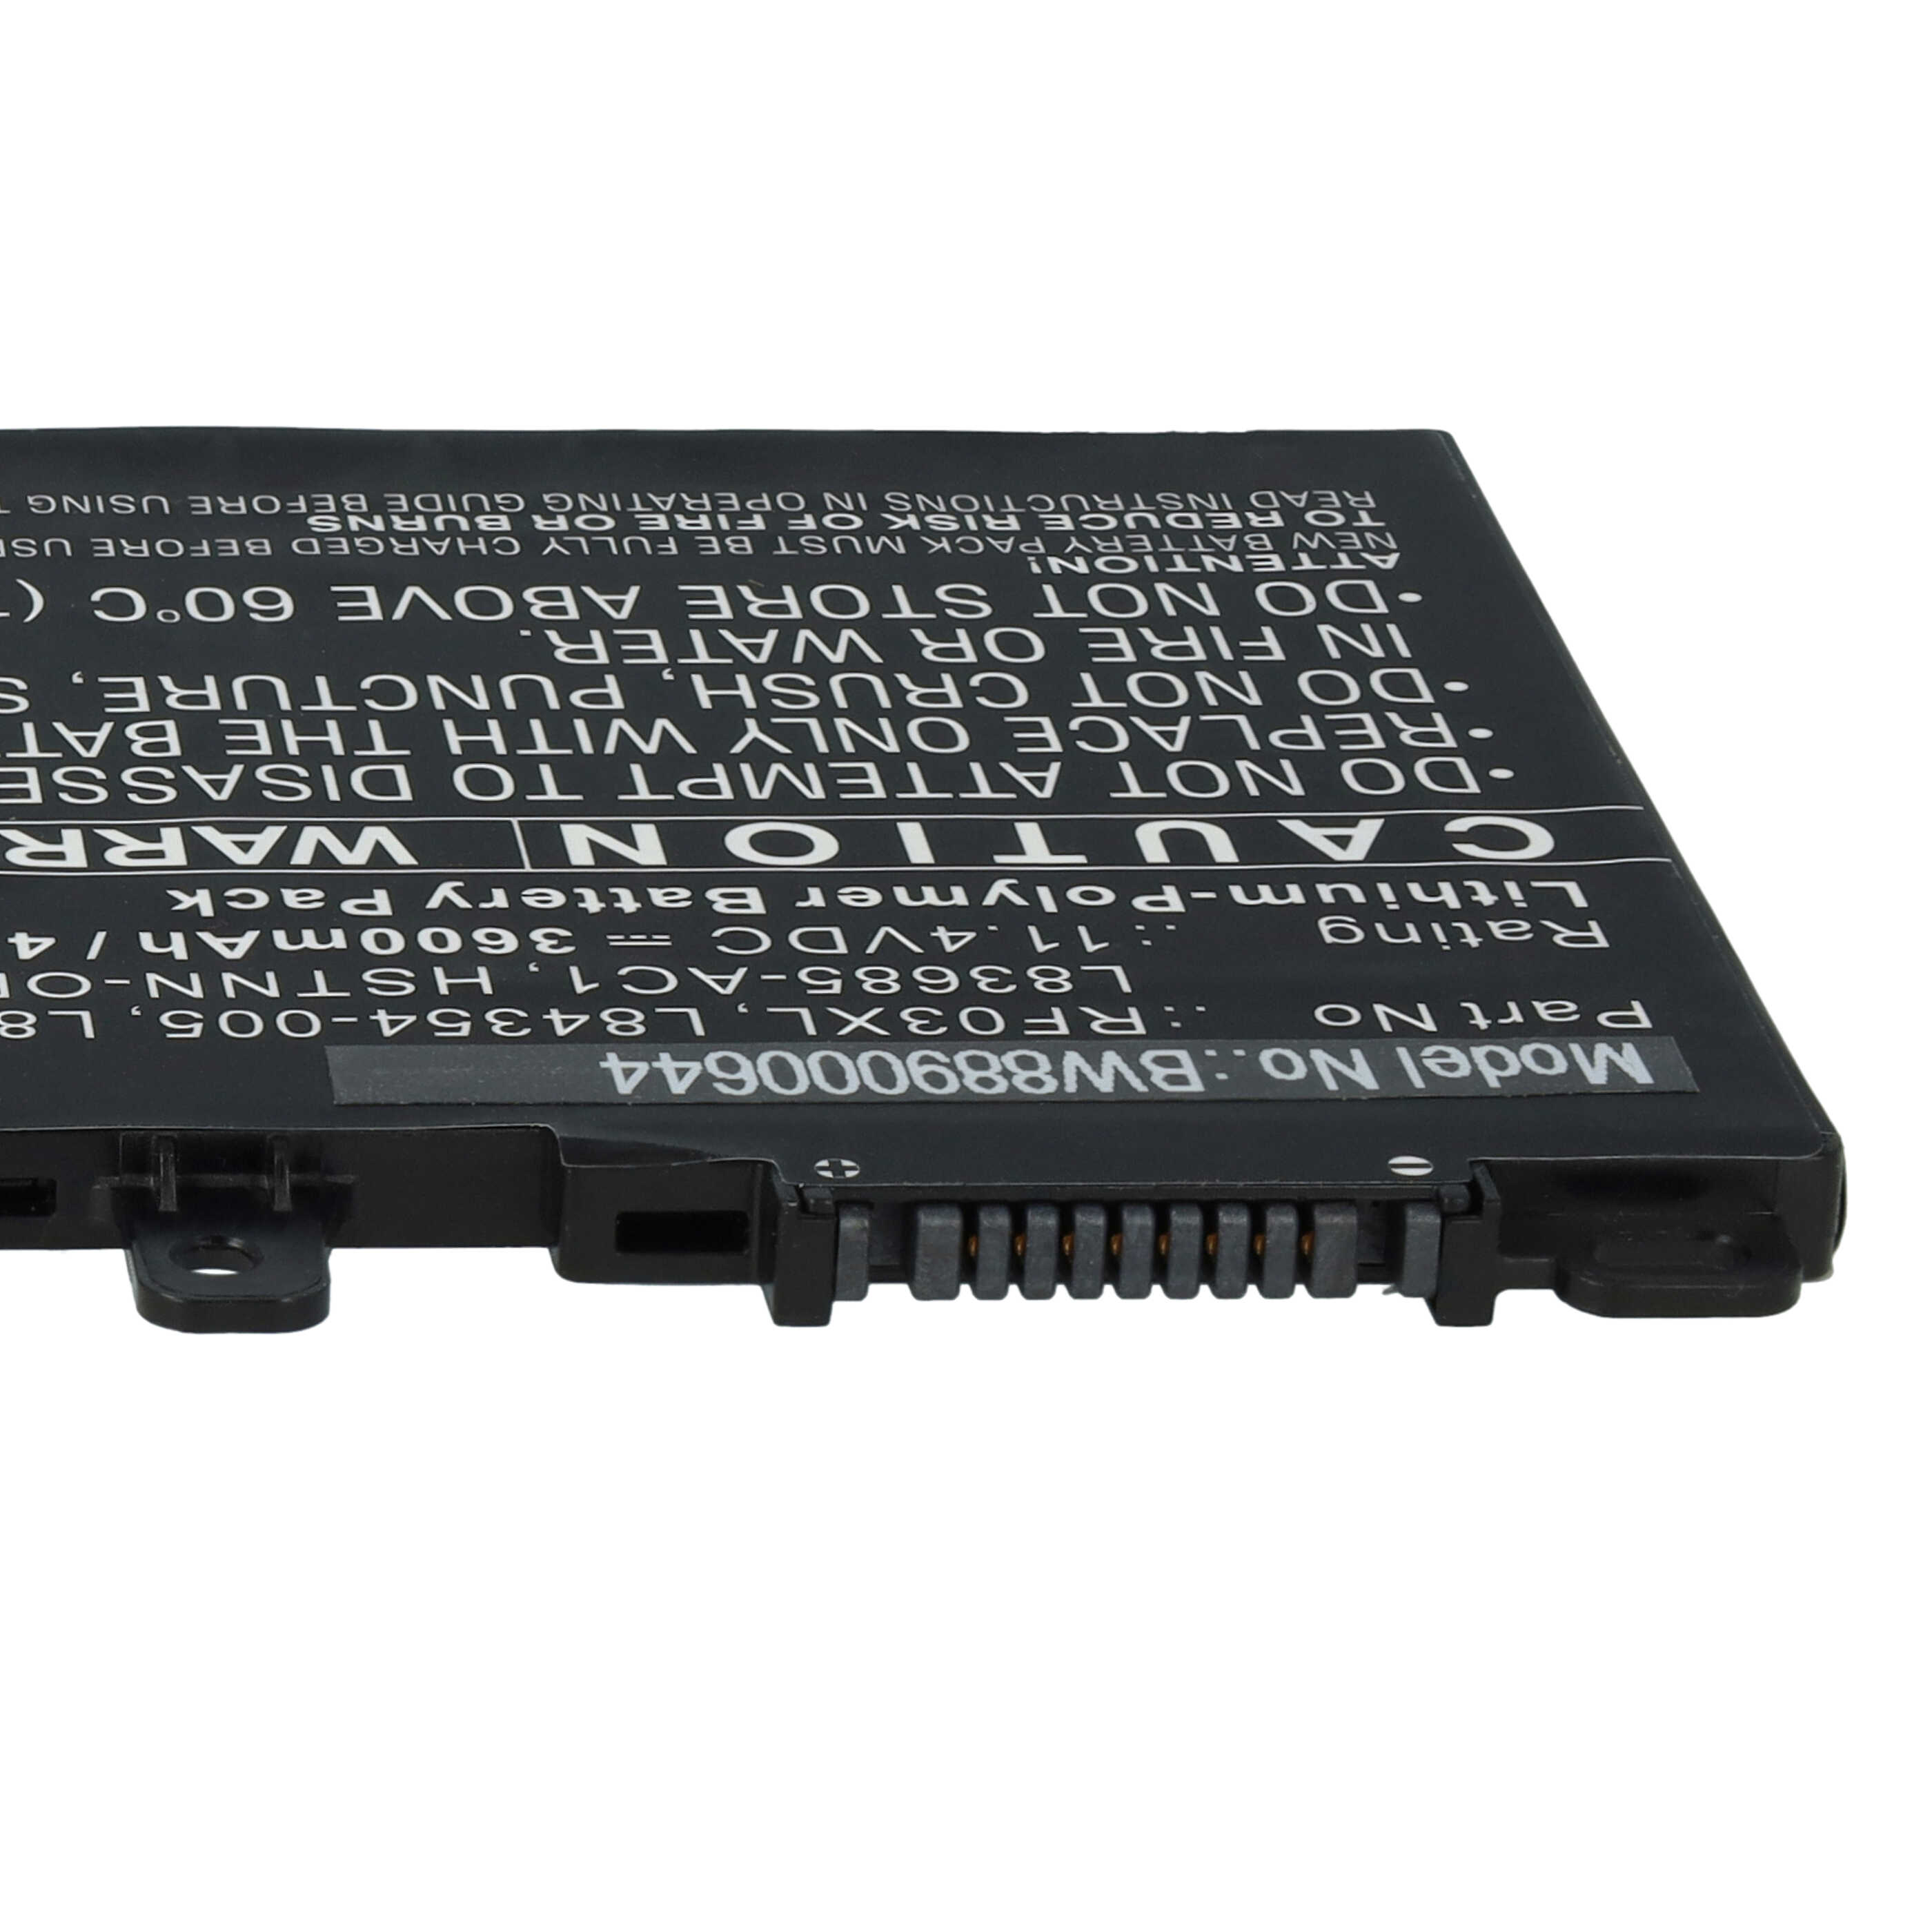 Batterie remplace HP HSTNN-DB9R, HSTNN-OB1Q, L83685-271 pour ordinateur portable - 3600mAh 11,4V Li-polymère